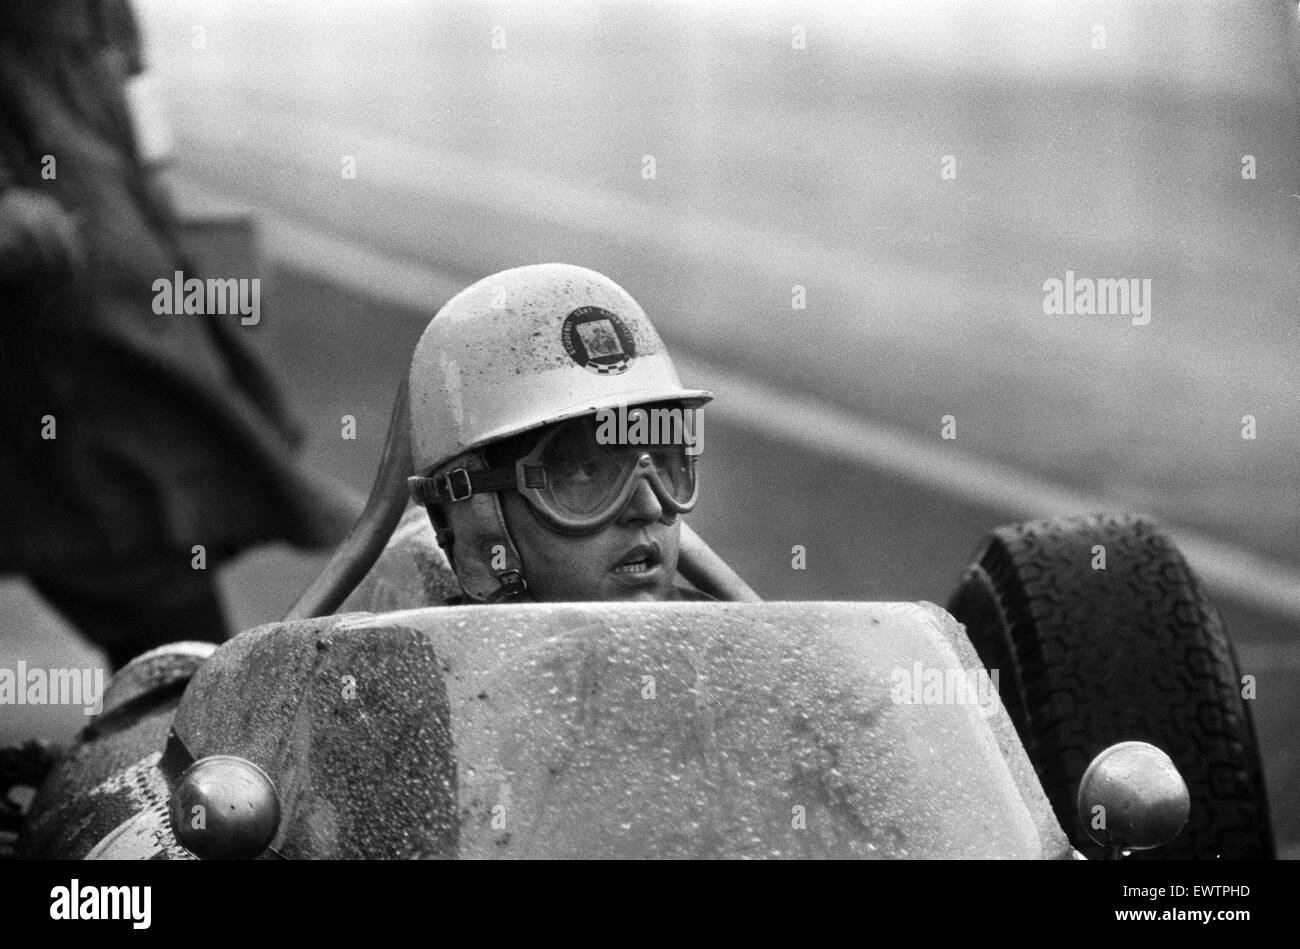 British Grand Prix di Formula Uno motor racing al Eglinton circuito vicino Liverpool. Giancarlo Baghetti in azione. Il 15 luglio 1961. Foto Stock